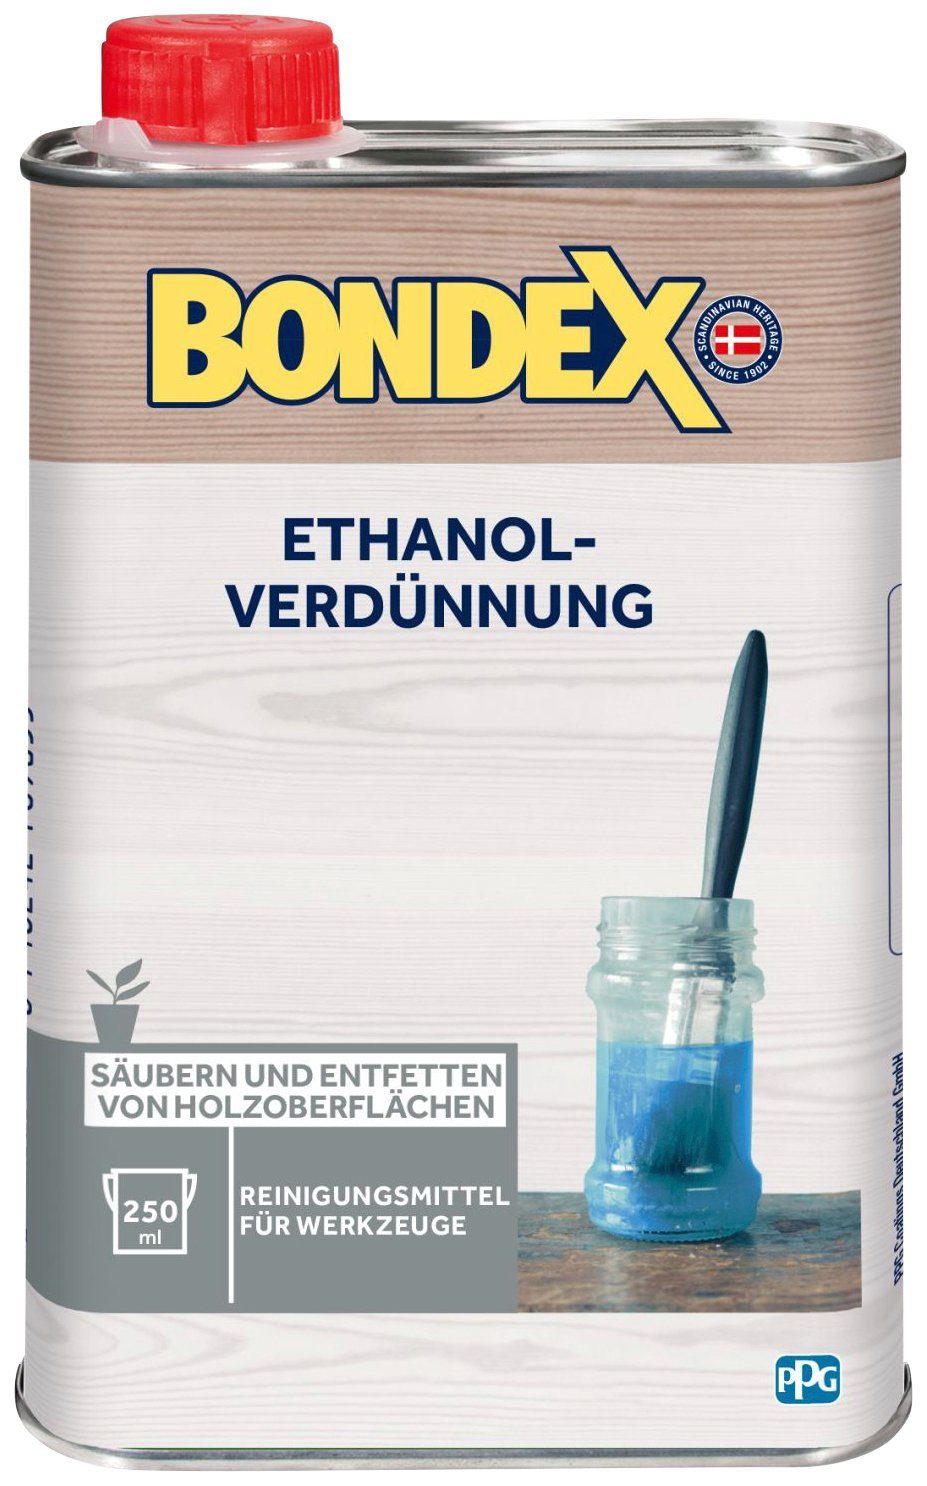 Terpentinersatz ETHANOL-VERDÜNNUNG, l Bondex 0,25